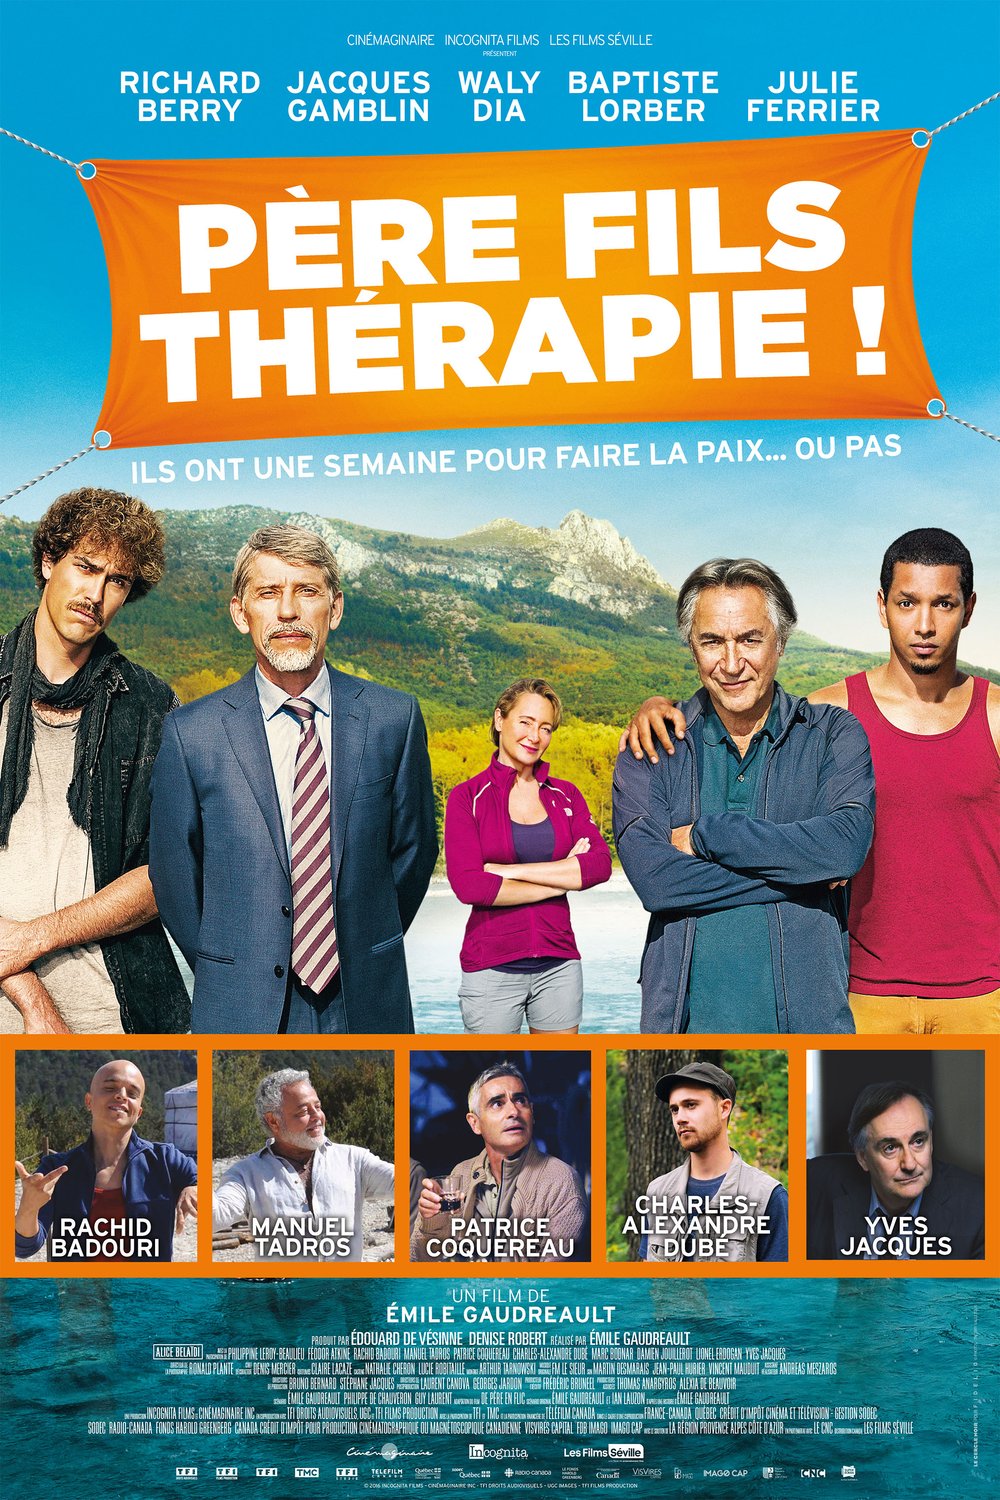 Poster of the movie Père fils thérapie!